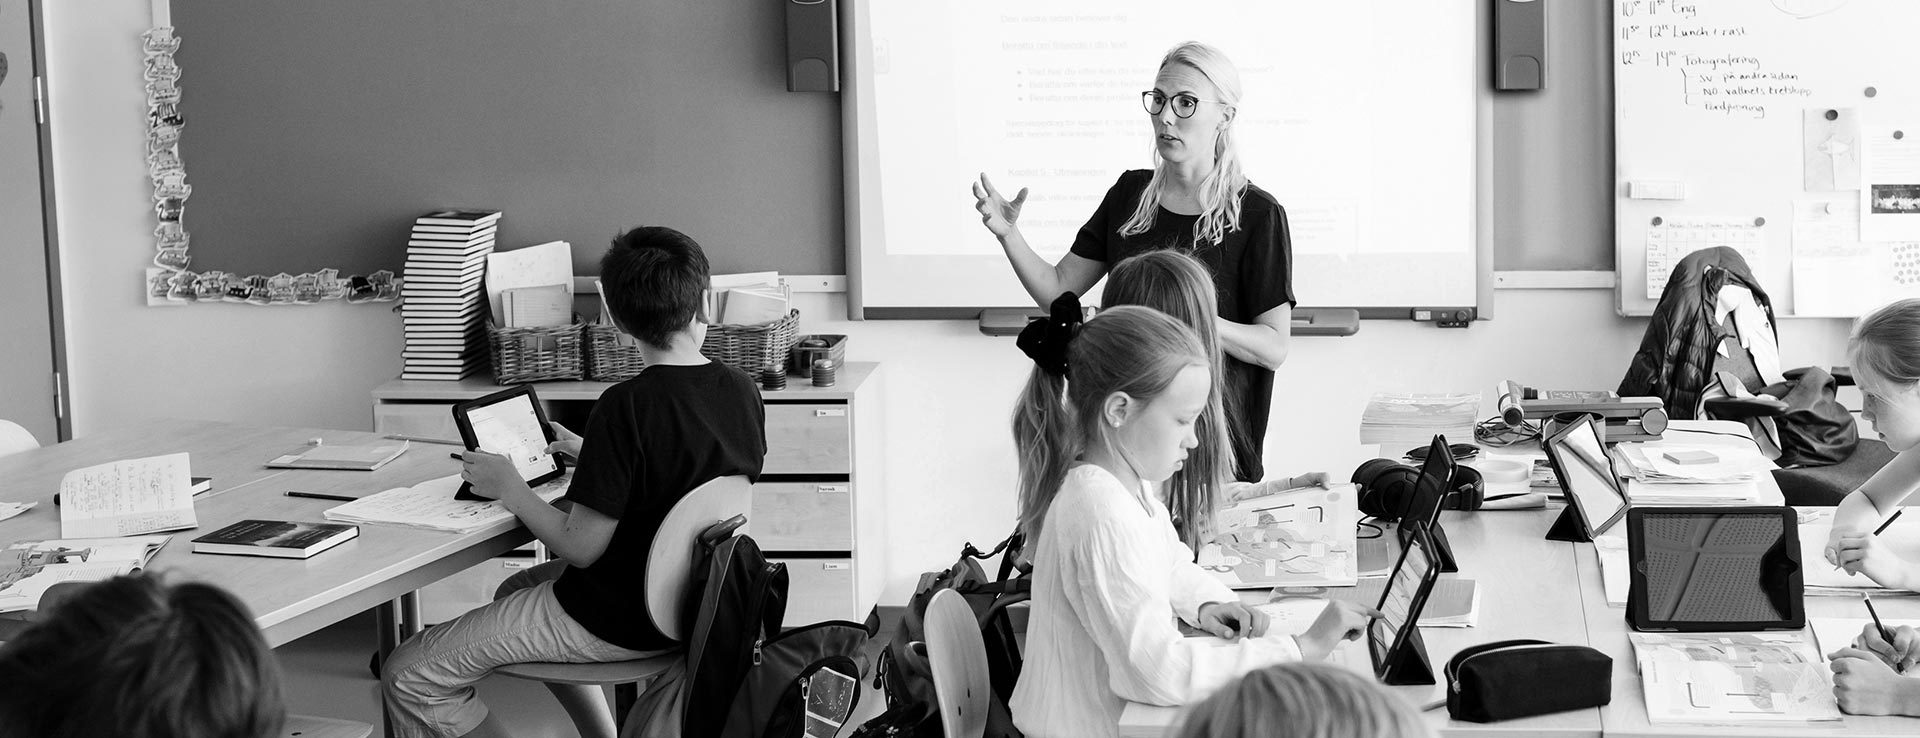 En lärare i ett klassrum gestikulerar med händerna. Kring henne sitter elever med surfplattor.